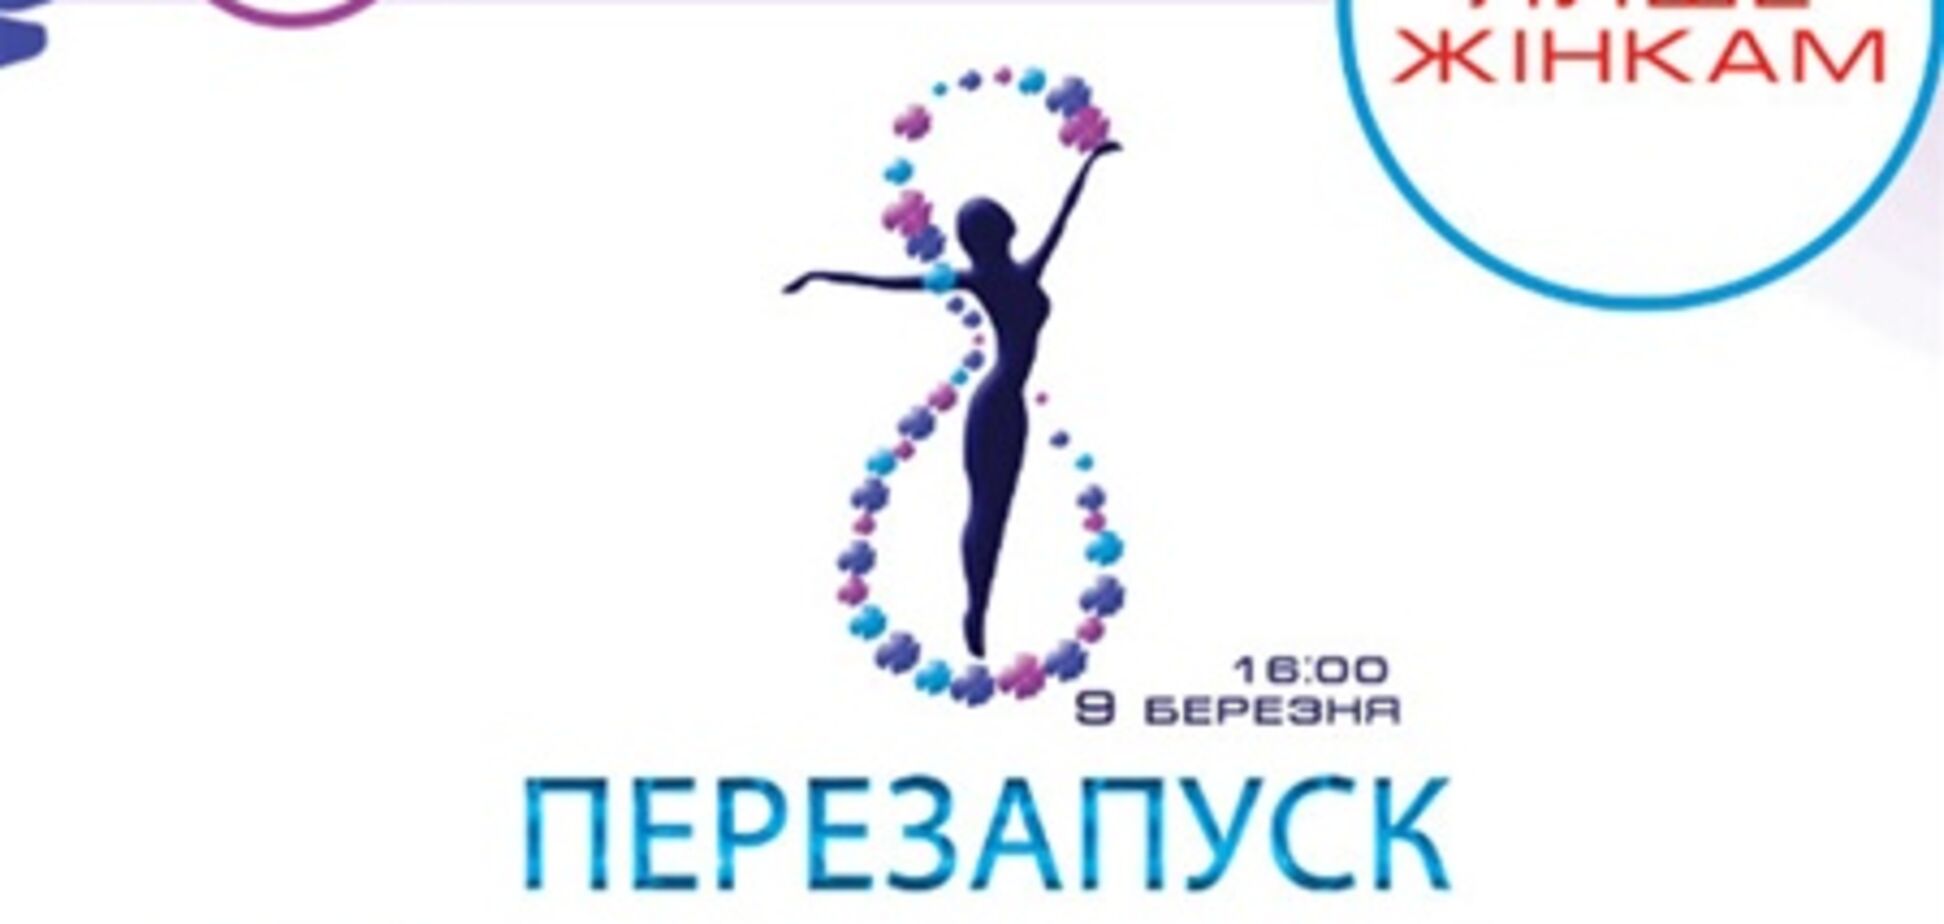 Притула, Фролова, Посипайко, Галич і Ашіон cтанут провідними 9 березня на Олімпійському